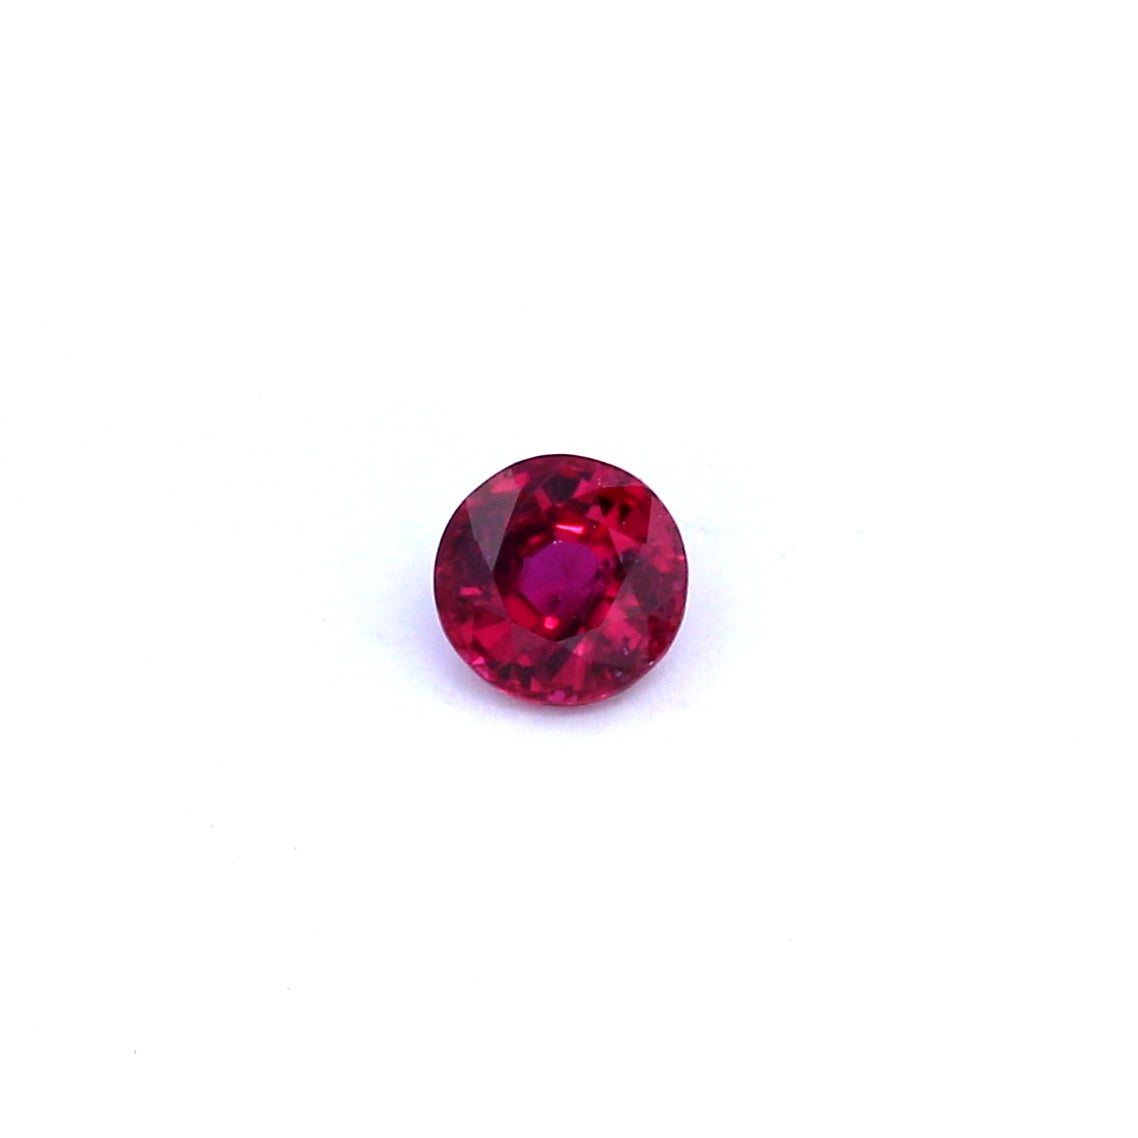 0.41ct Purplish Red, Round Ruby, Heated, Thailand - 4.42 x 4.47 x 2.50mm